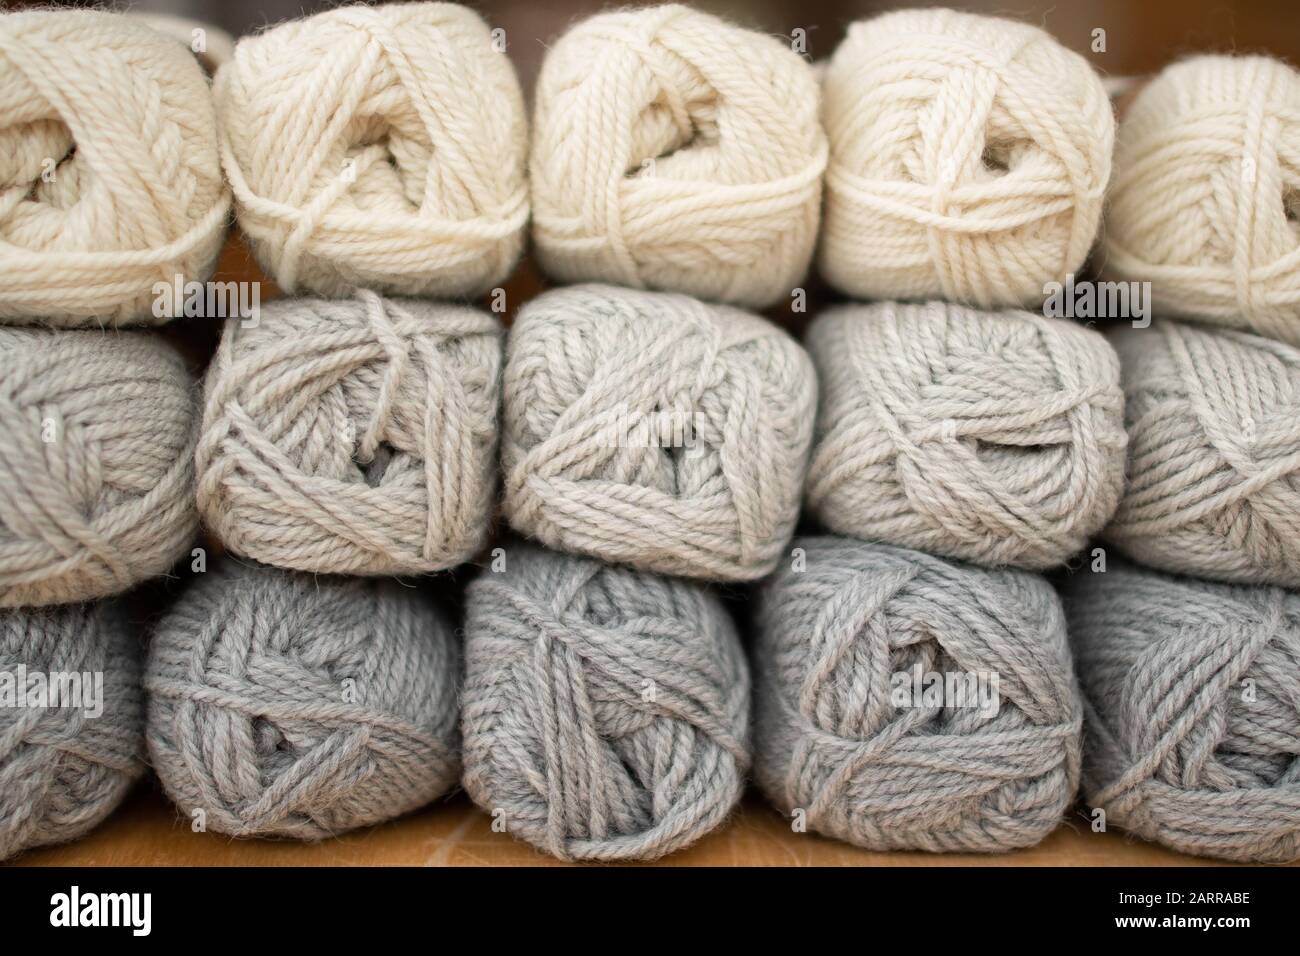 colori neutri - palline di lana nei toni del grigio e del bianco Foto Stock